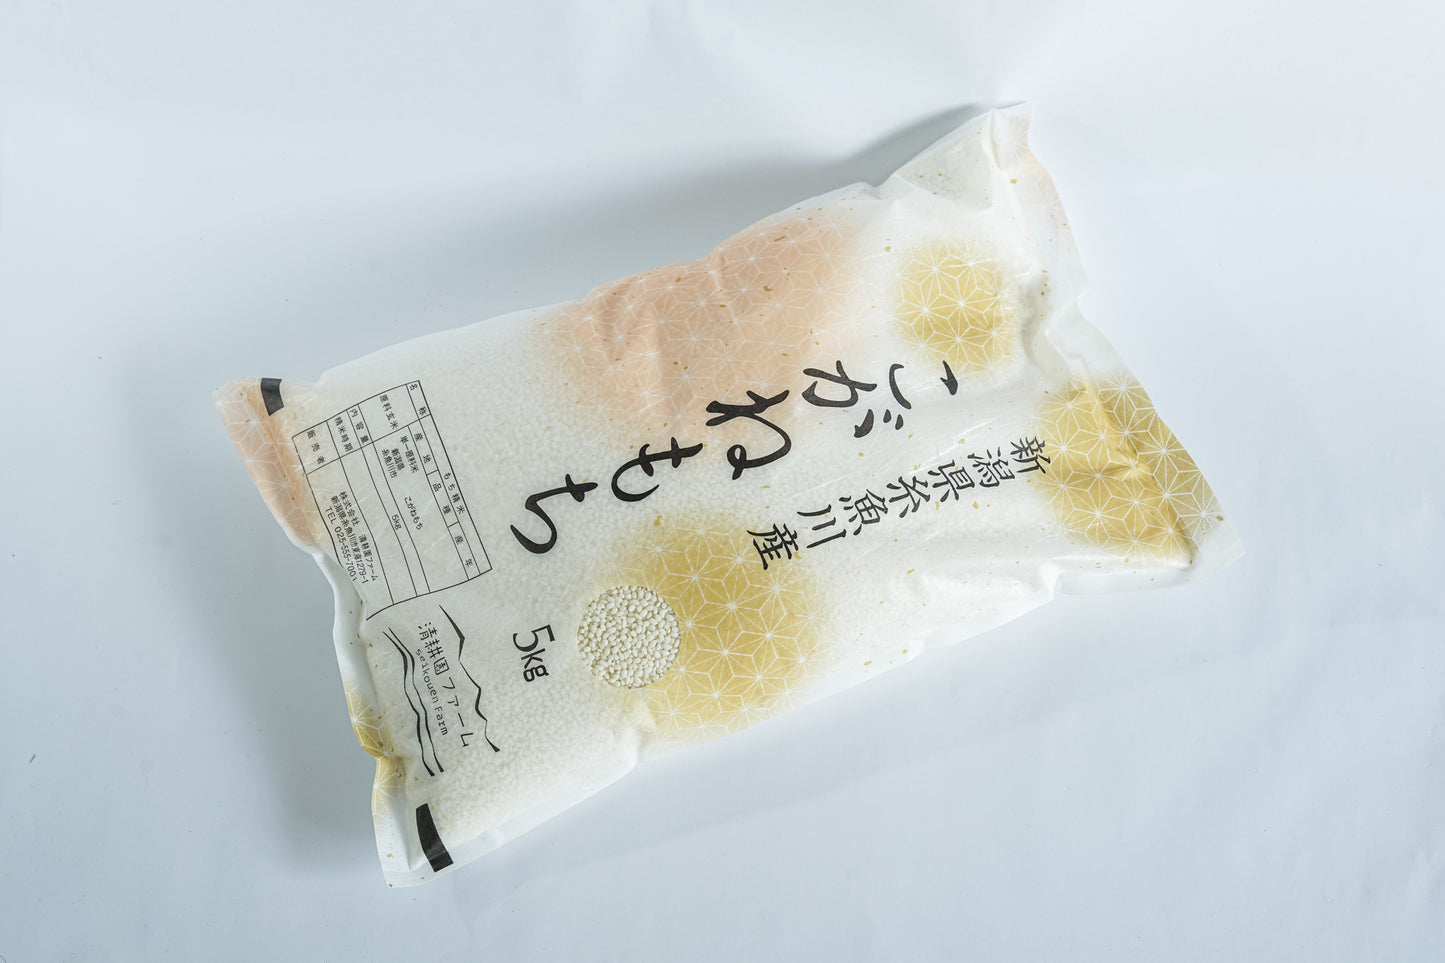 【R5年産】糸魚川産「こがねもち」玄米(5kg)